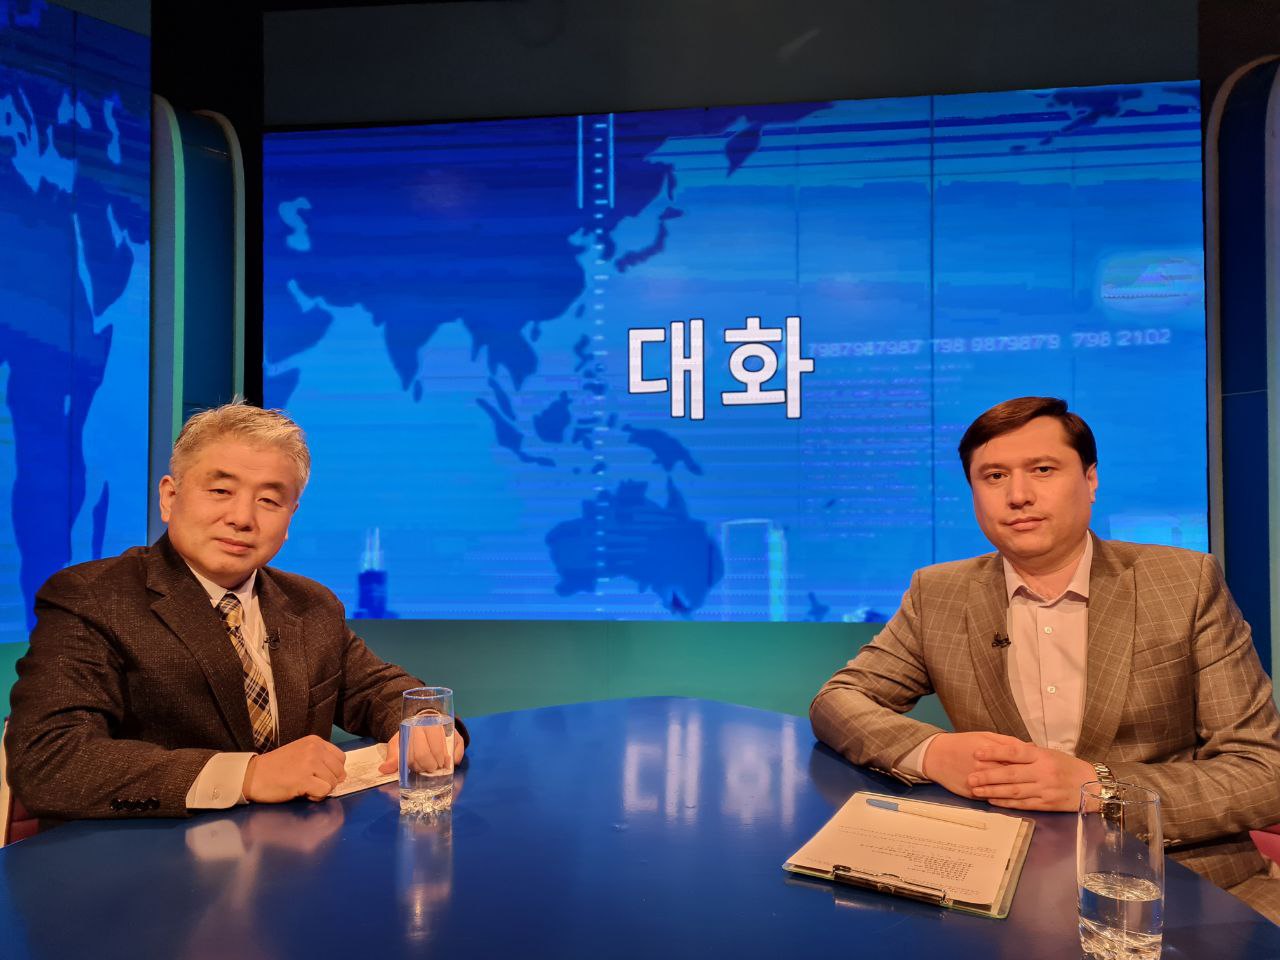 사진 오른쪽이 필자인 아크바로프 아자마트 씨. 우즈베키스탄 국립교육방송에서 한국어 프로그램을 진행하고 있다.